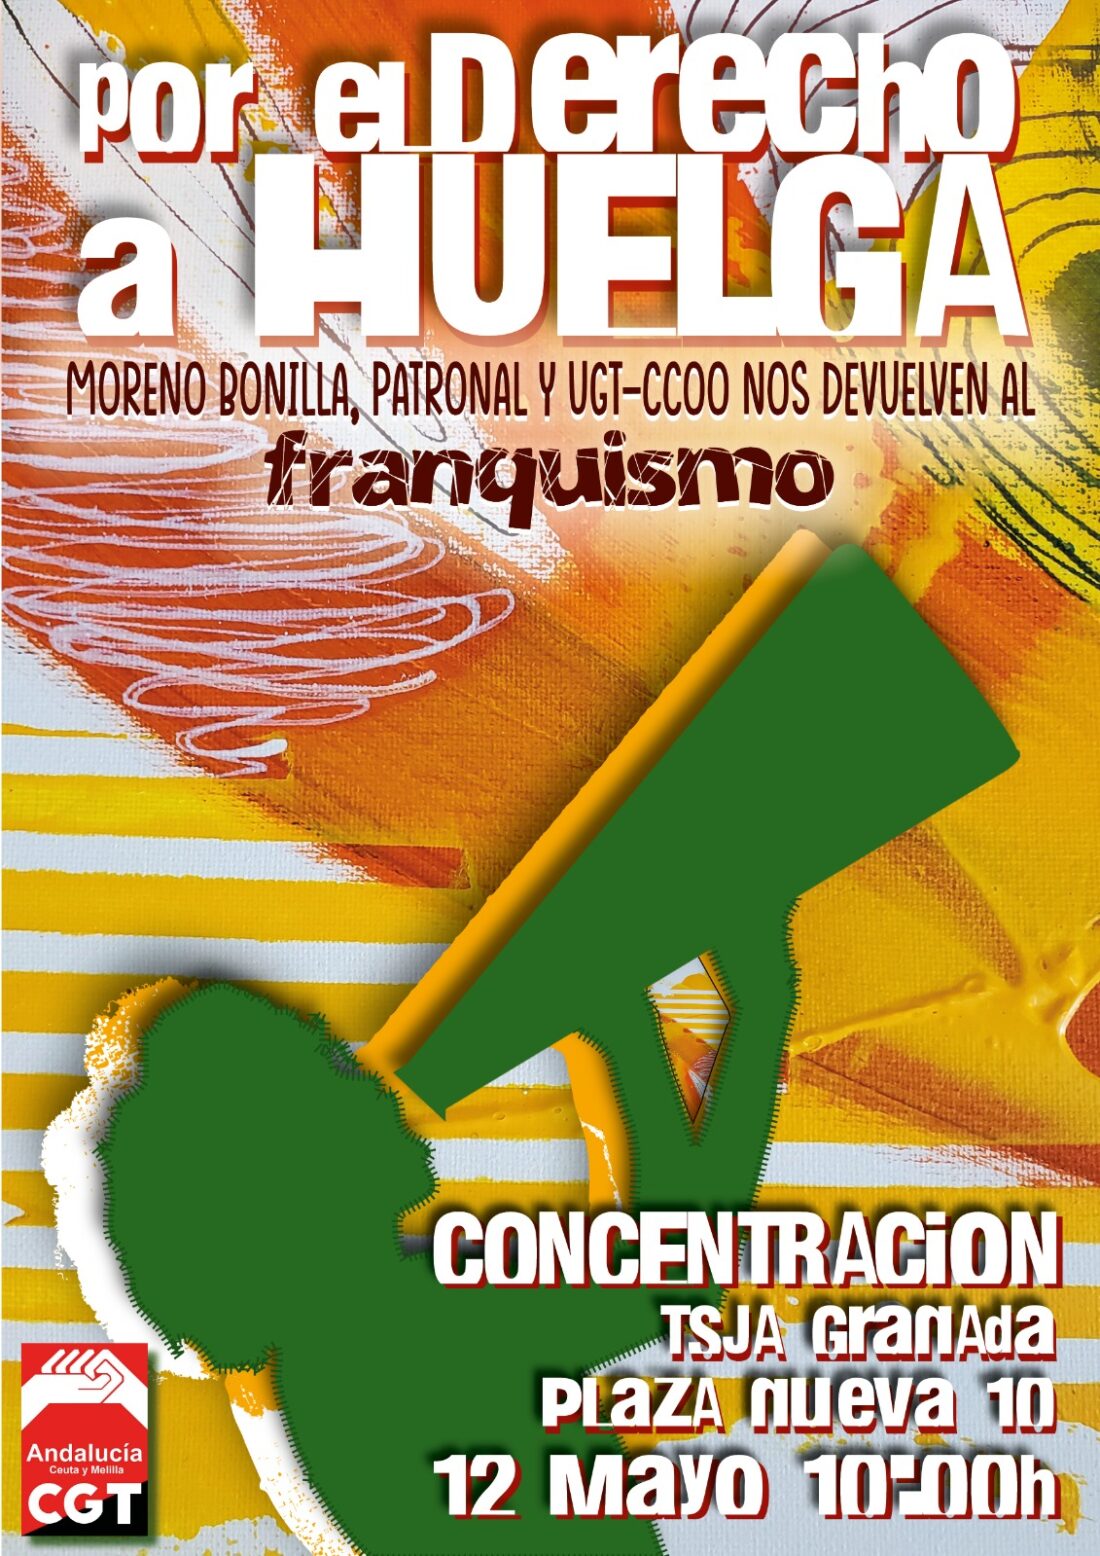 La Junta de Andalucía, patronal y sindicatos del sistema se sentarán en el banquillo el próximo jueves 12 de mayo por limitar al extremo el derecho fundamental a la huelga en nuestra Comunidad